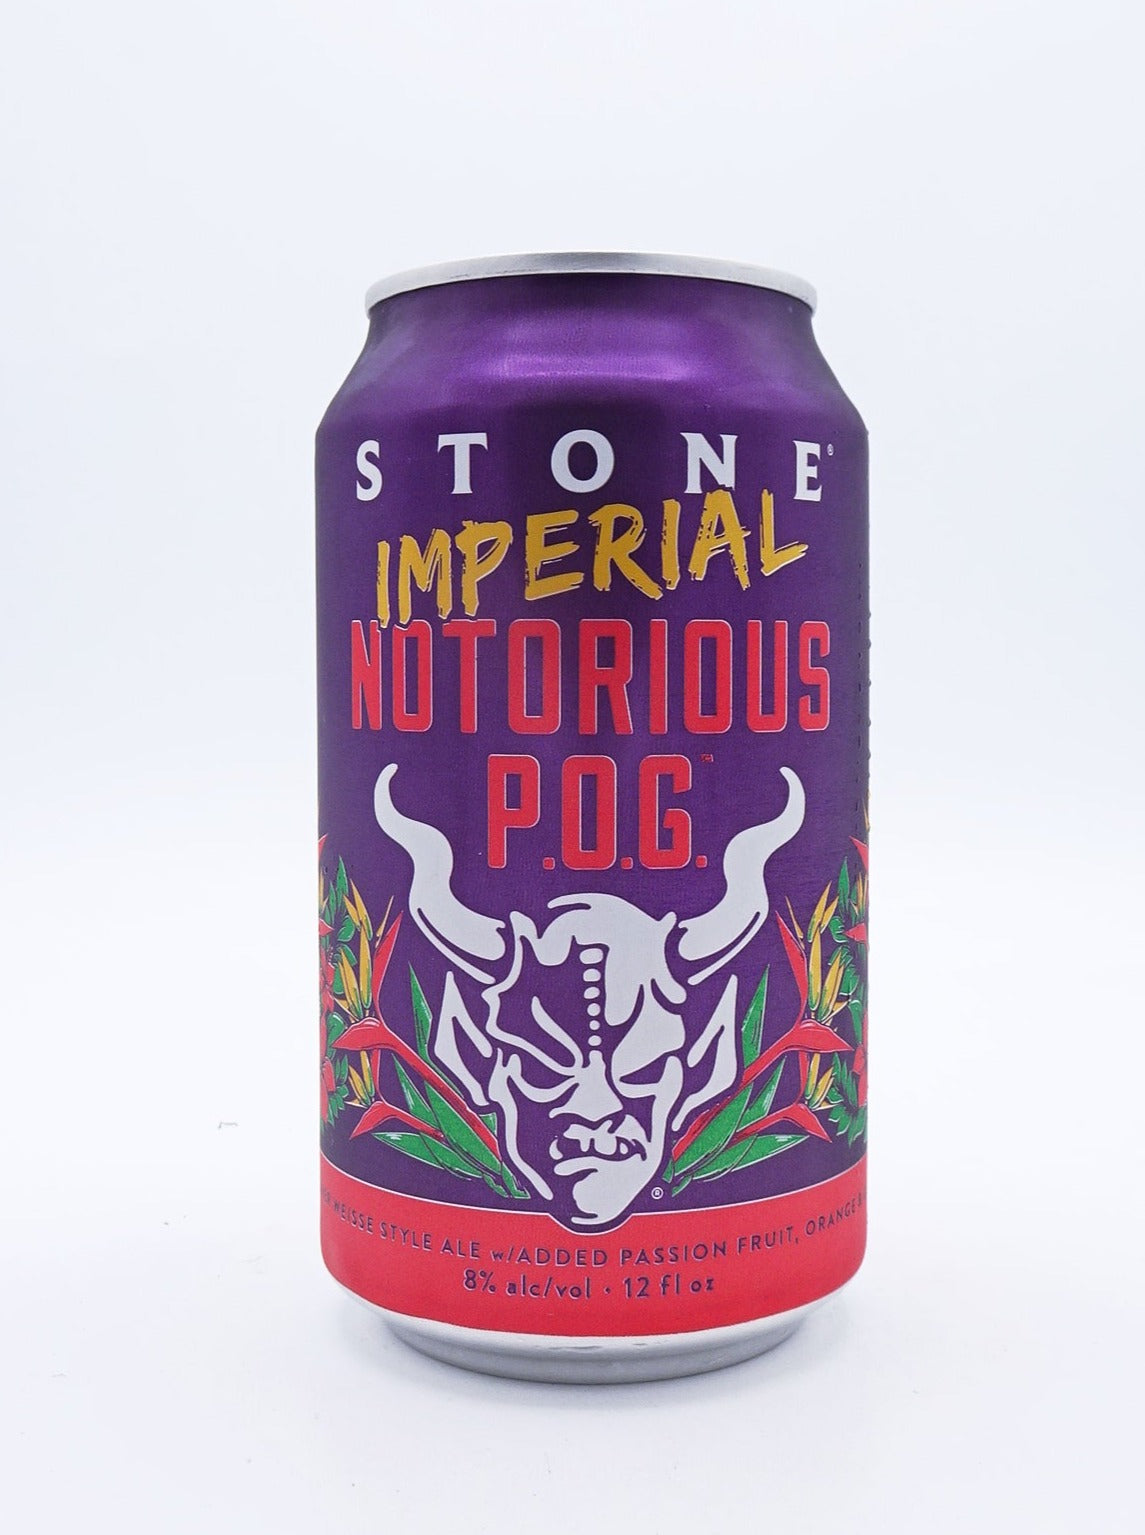 Stone Imperial Notorious POG / ストーン インペリアル ノトリアスPOG